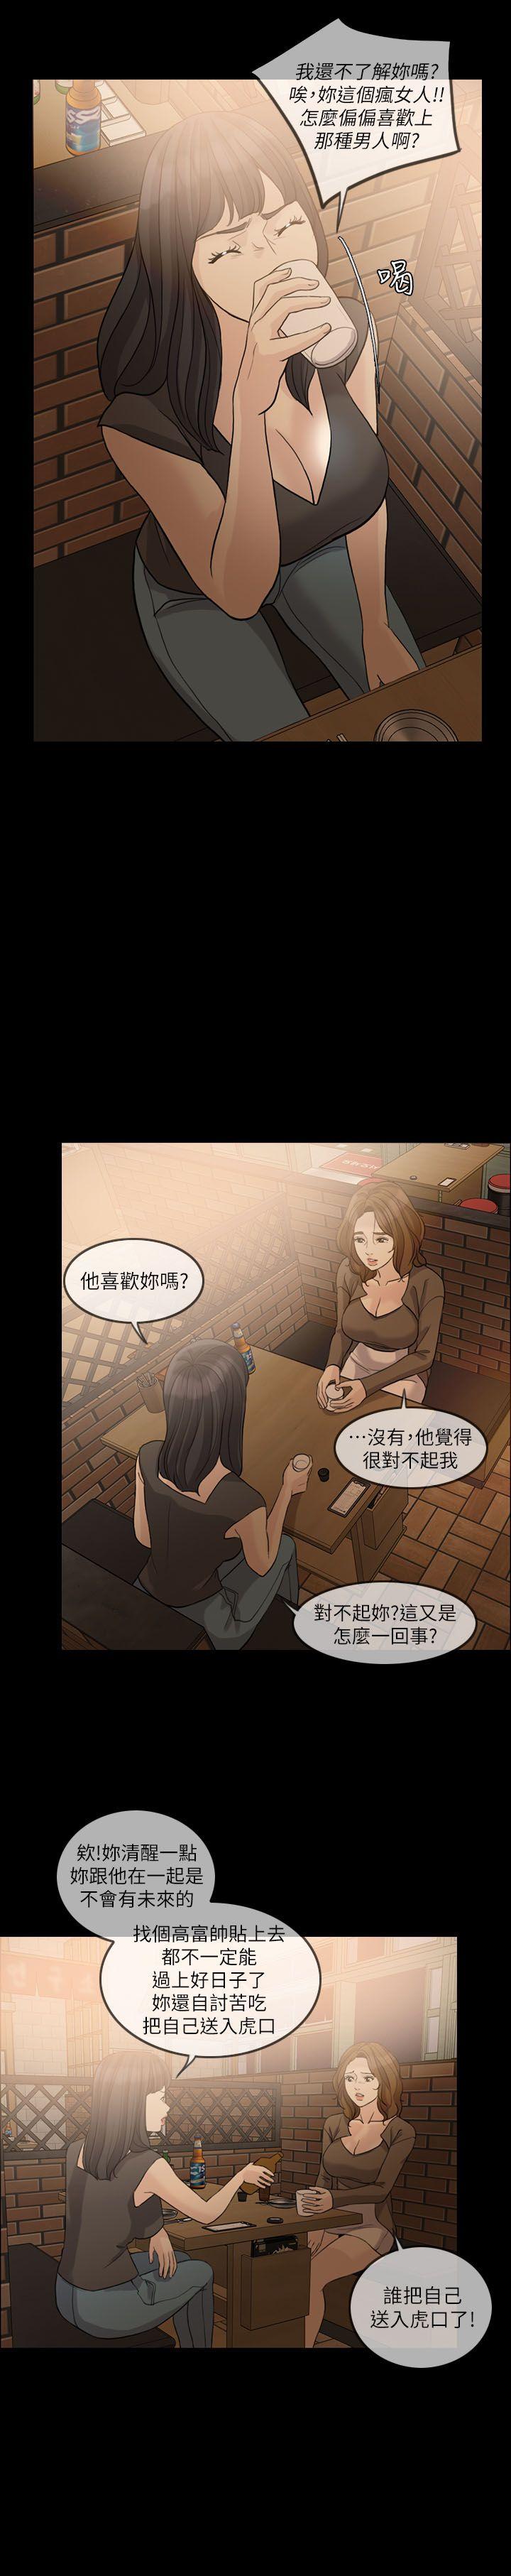 韩国污漫画 失控的愛 第15话-轰轰烈烈地来一场 8